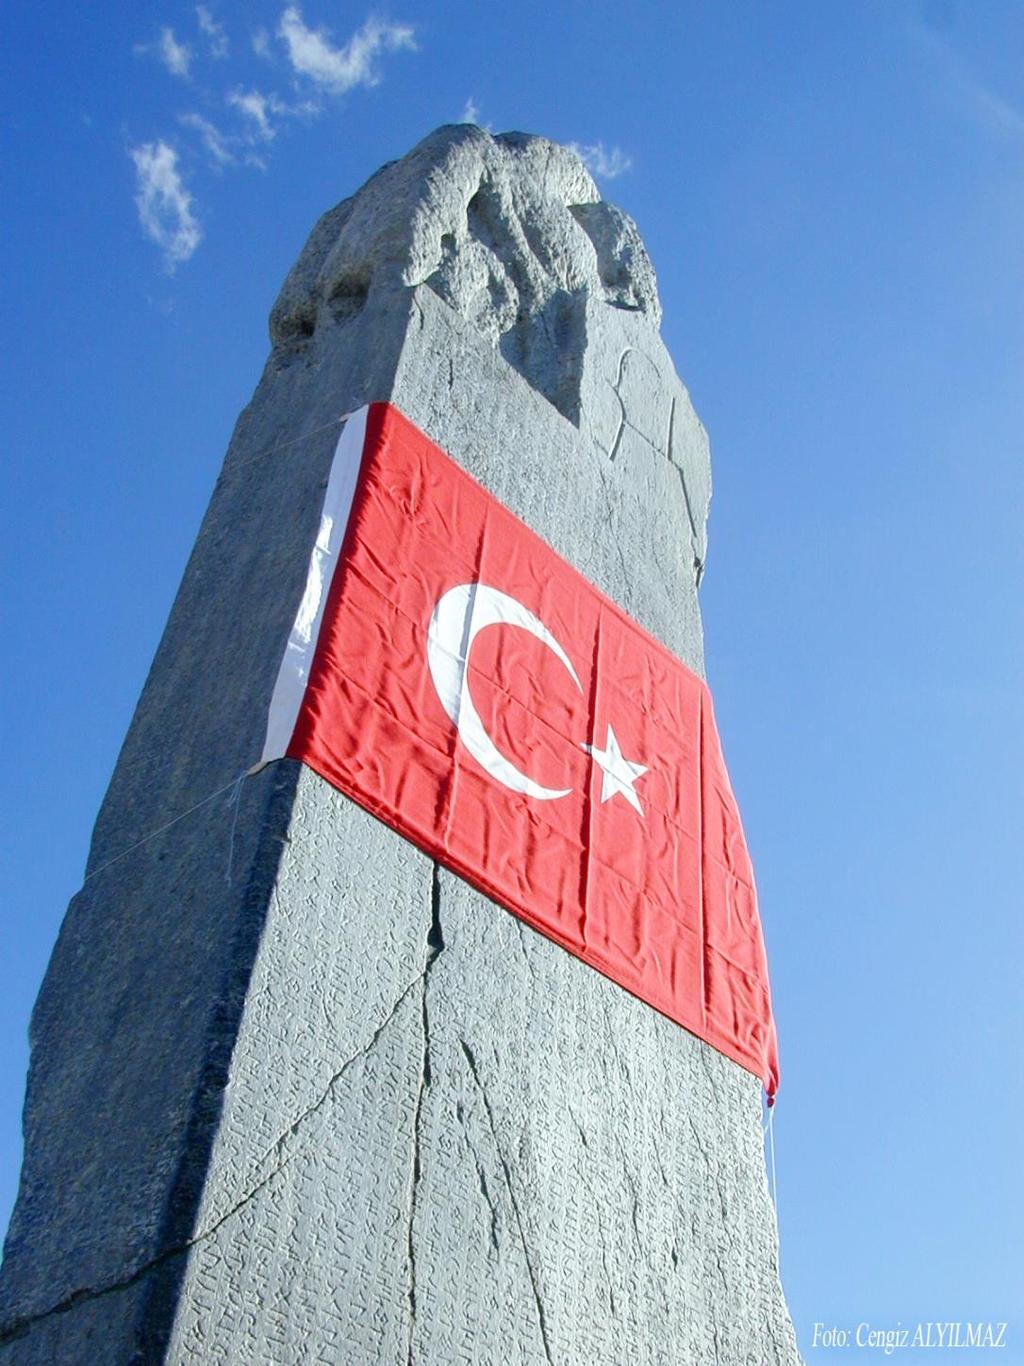 1431 Cengiz ALYILMAZ Foto 1: Türkiye Cumhuriyeti Devleti Bayrağı nın Köl Tigin Yazıtı yla buluştuğu